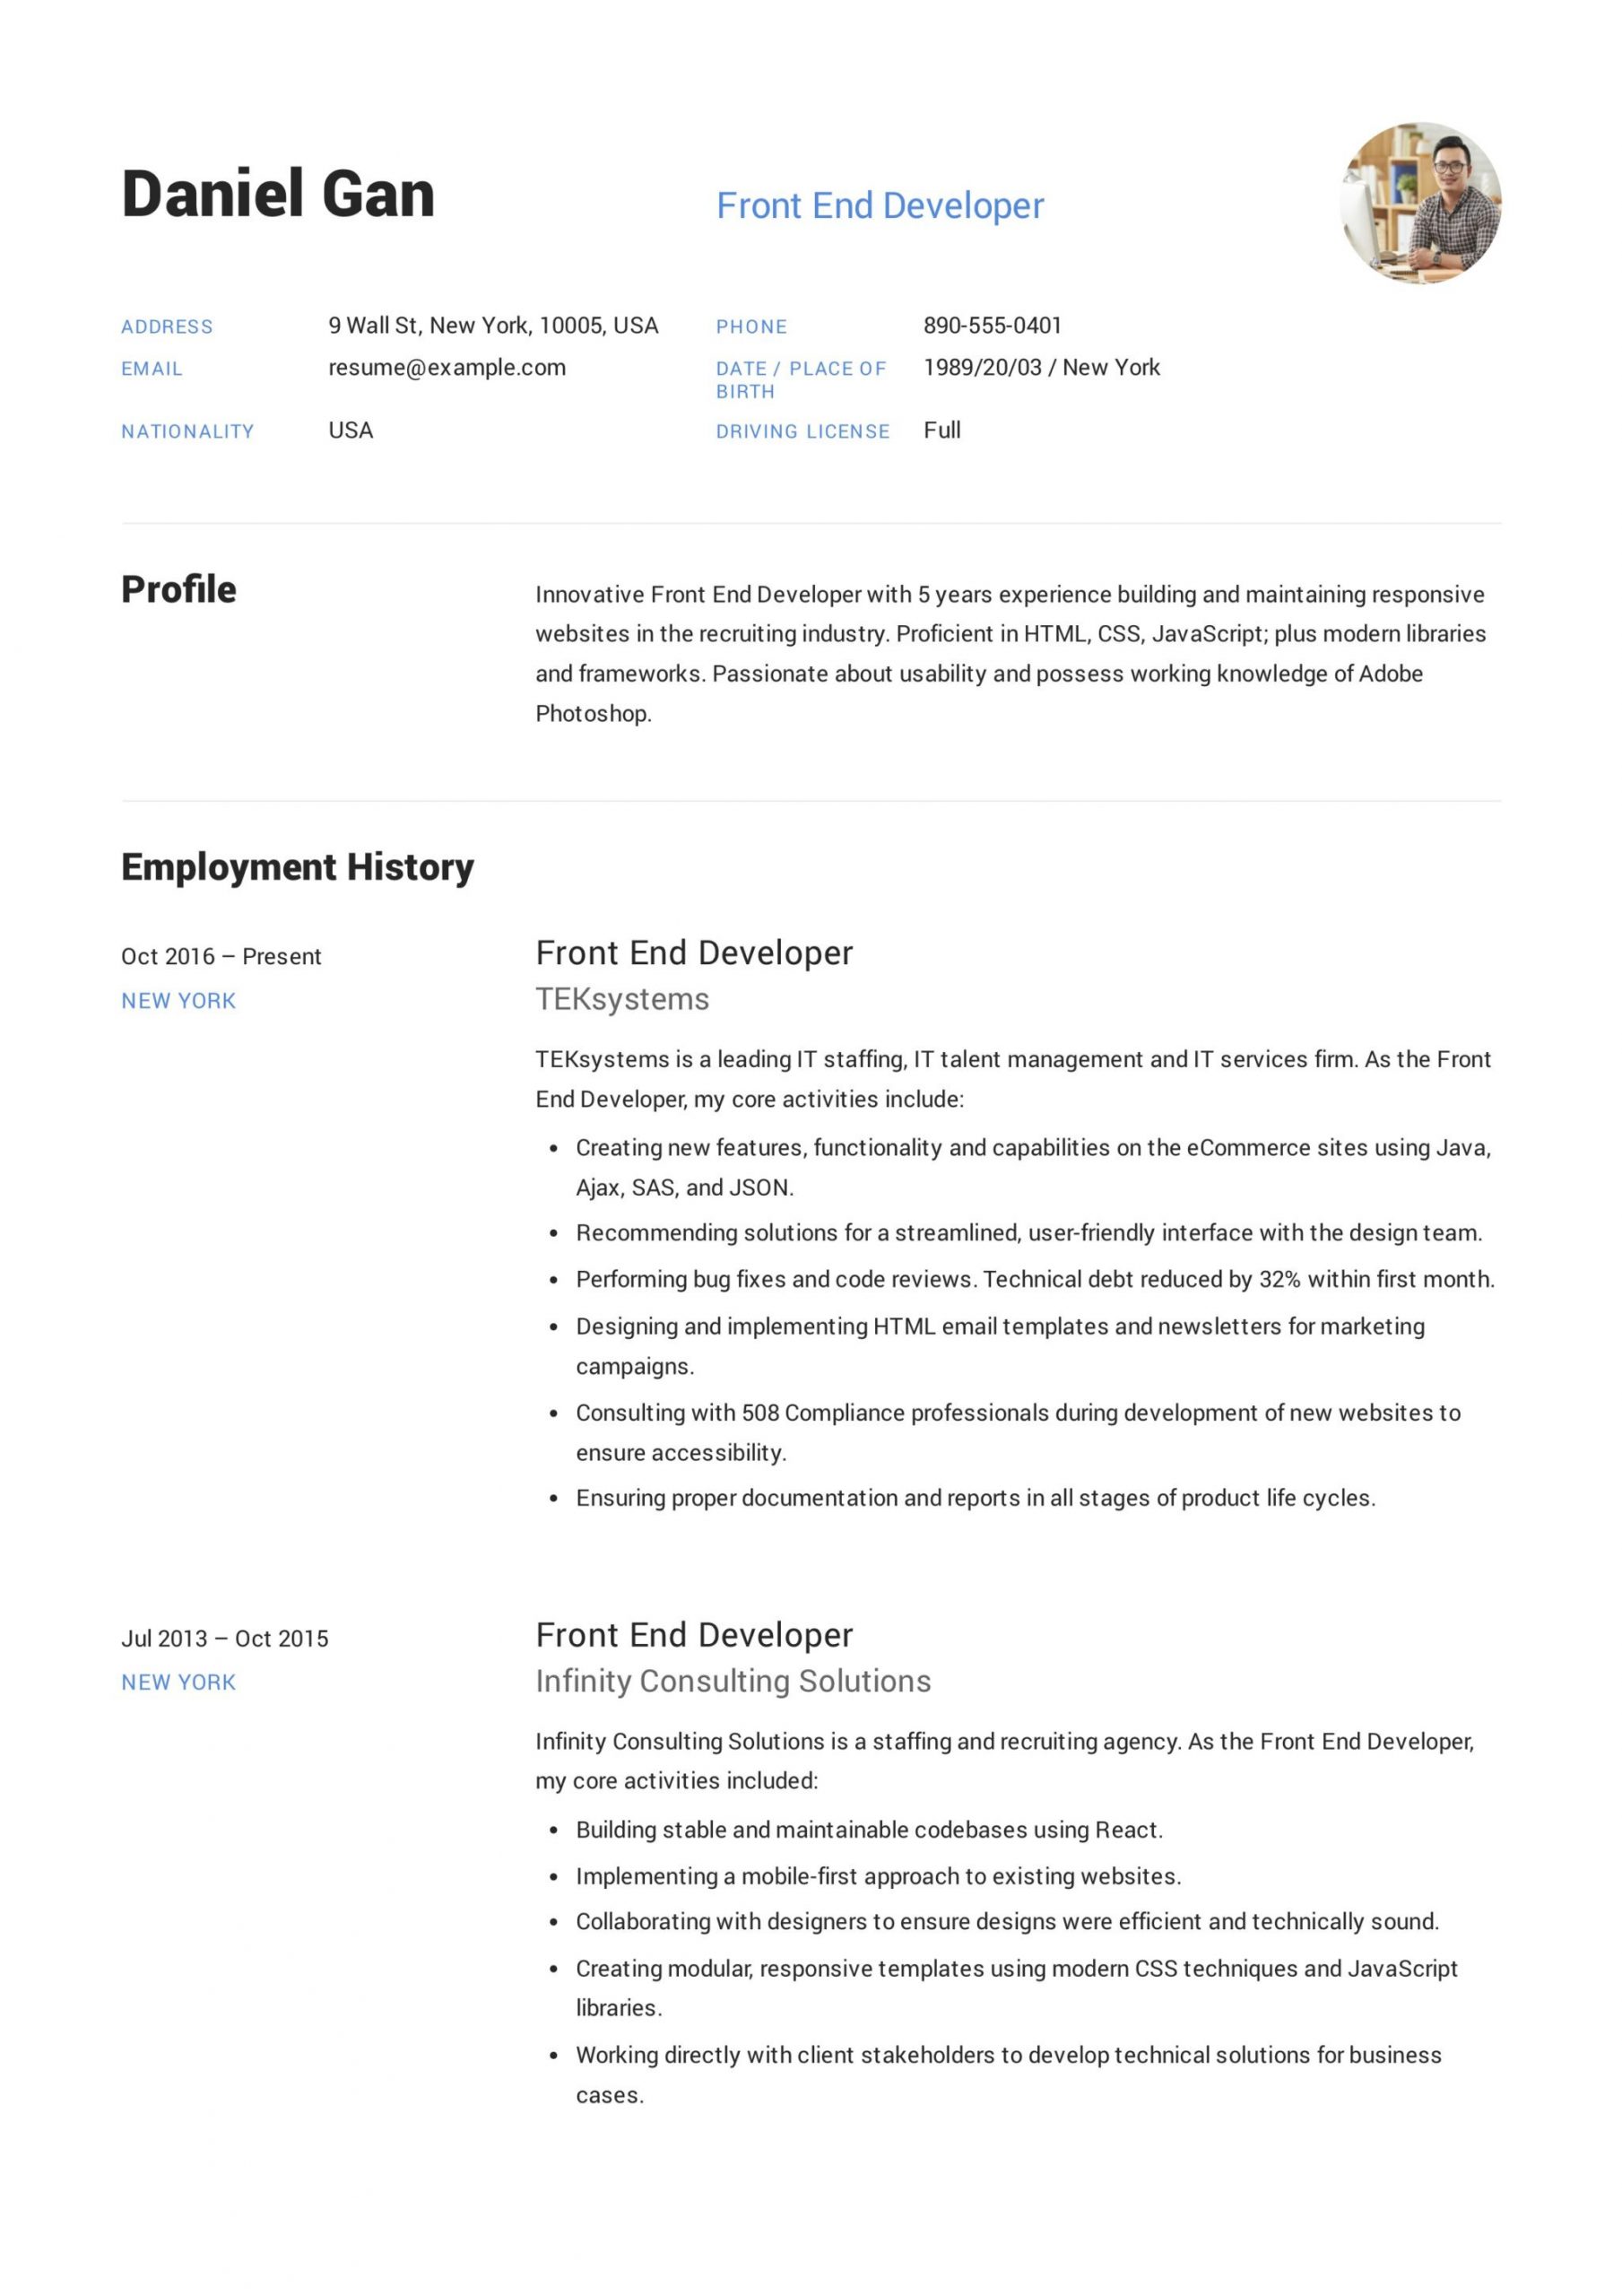 Front End Developer Resume Template Download 17 Front-end Developer Resume Examples & Guide Pdf